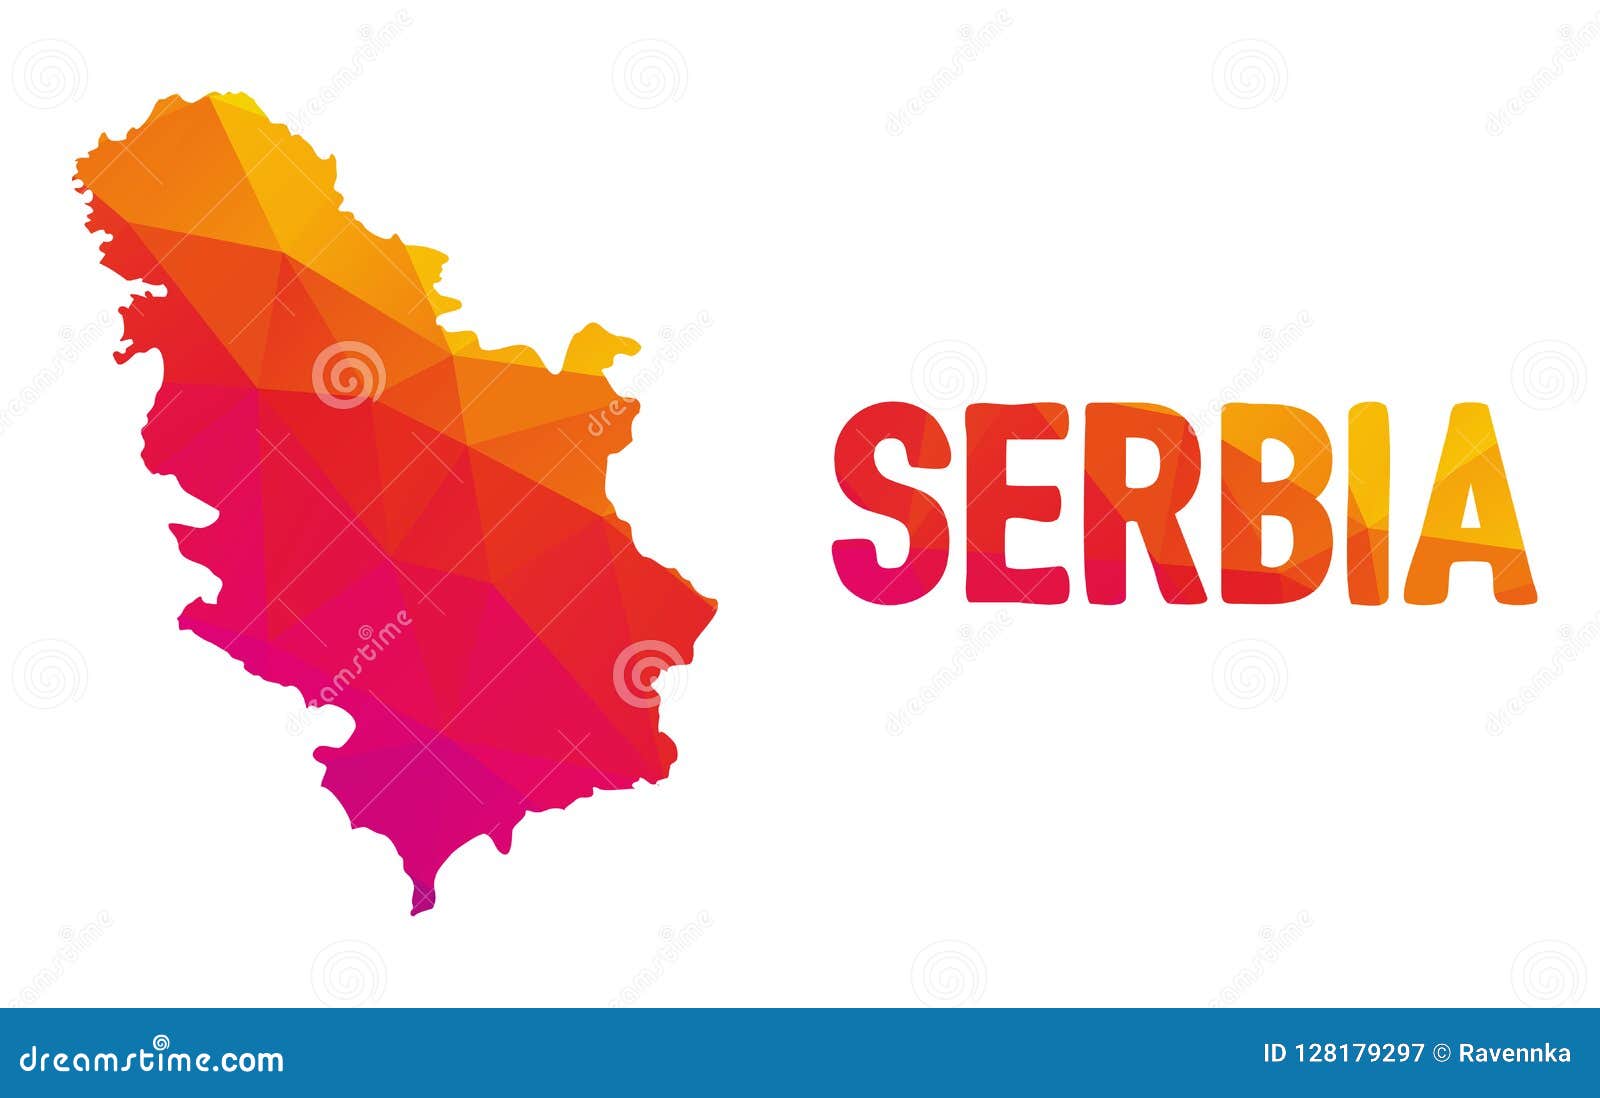 Srbija Prieš pereidami